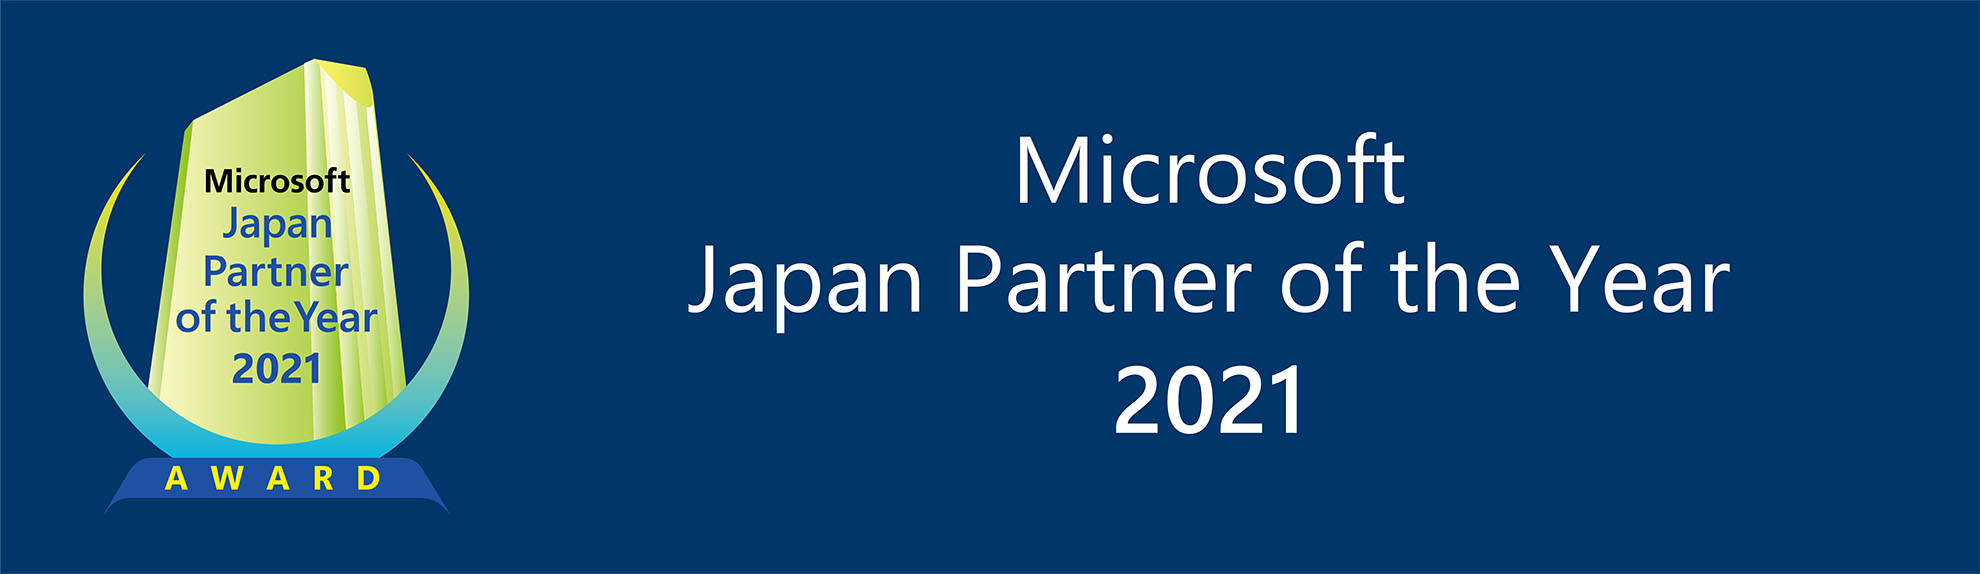 マイクロソフト ジャパン パートナー オブ ザ イヤー 2021 - Microsoft Japan Partner of the Year 2021